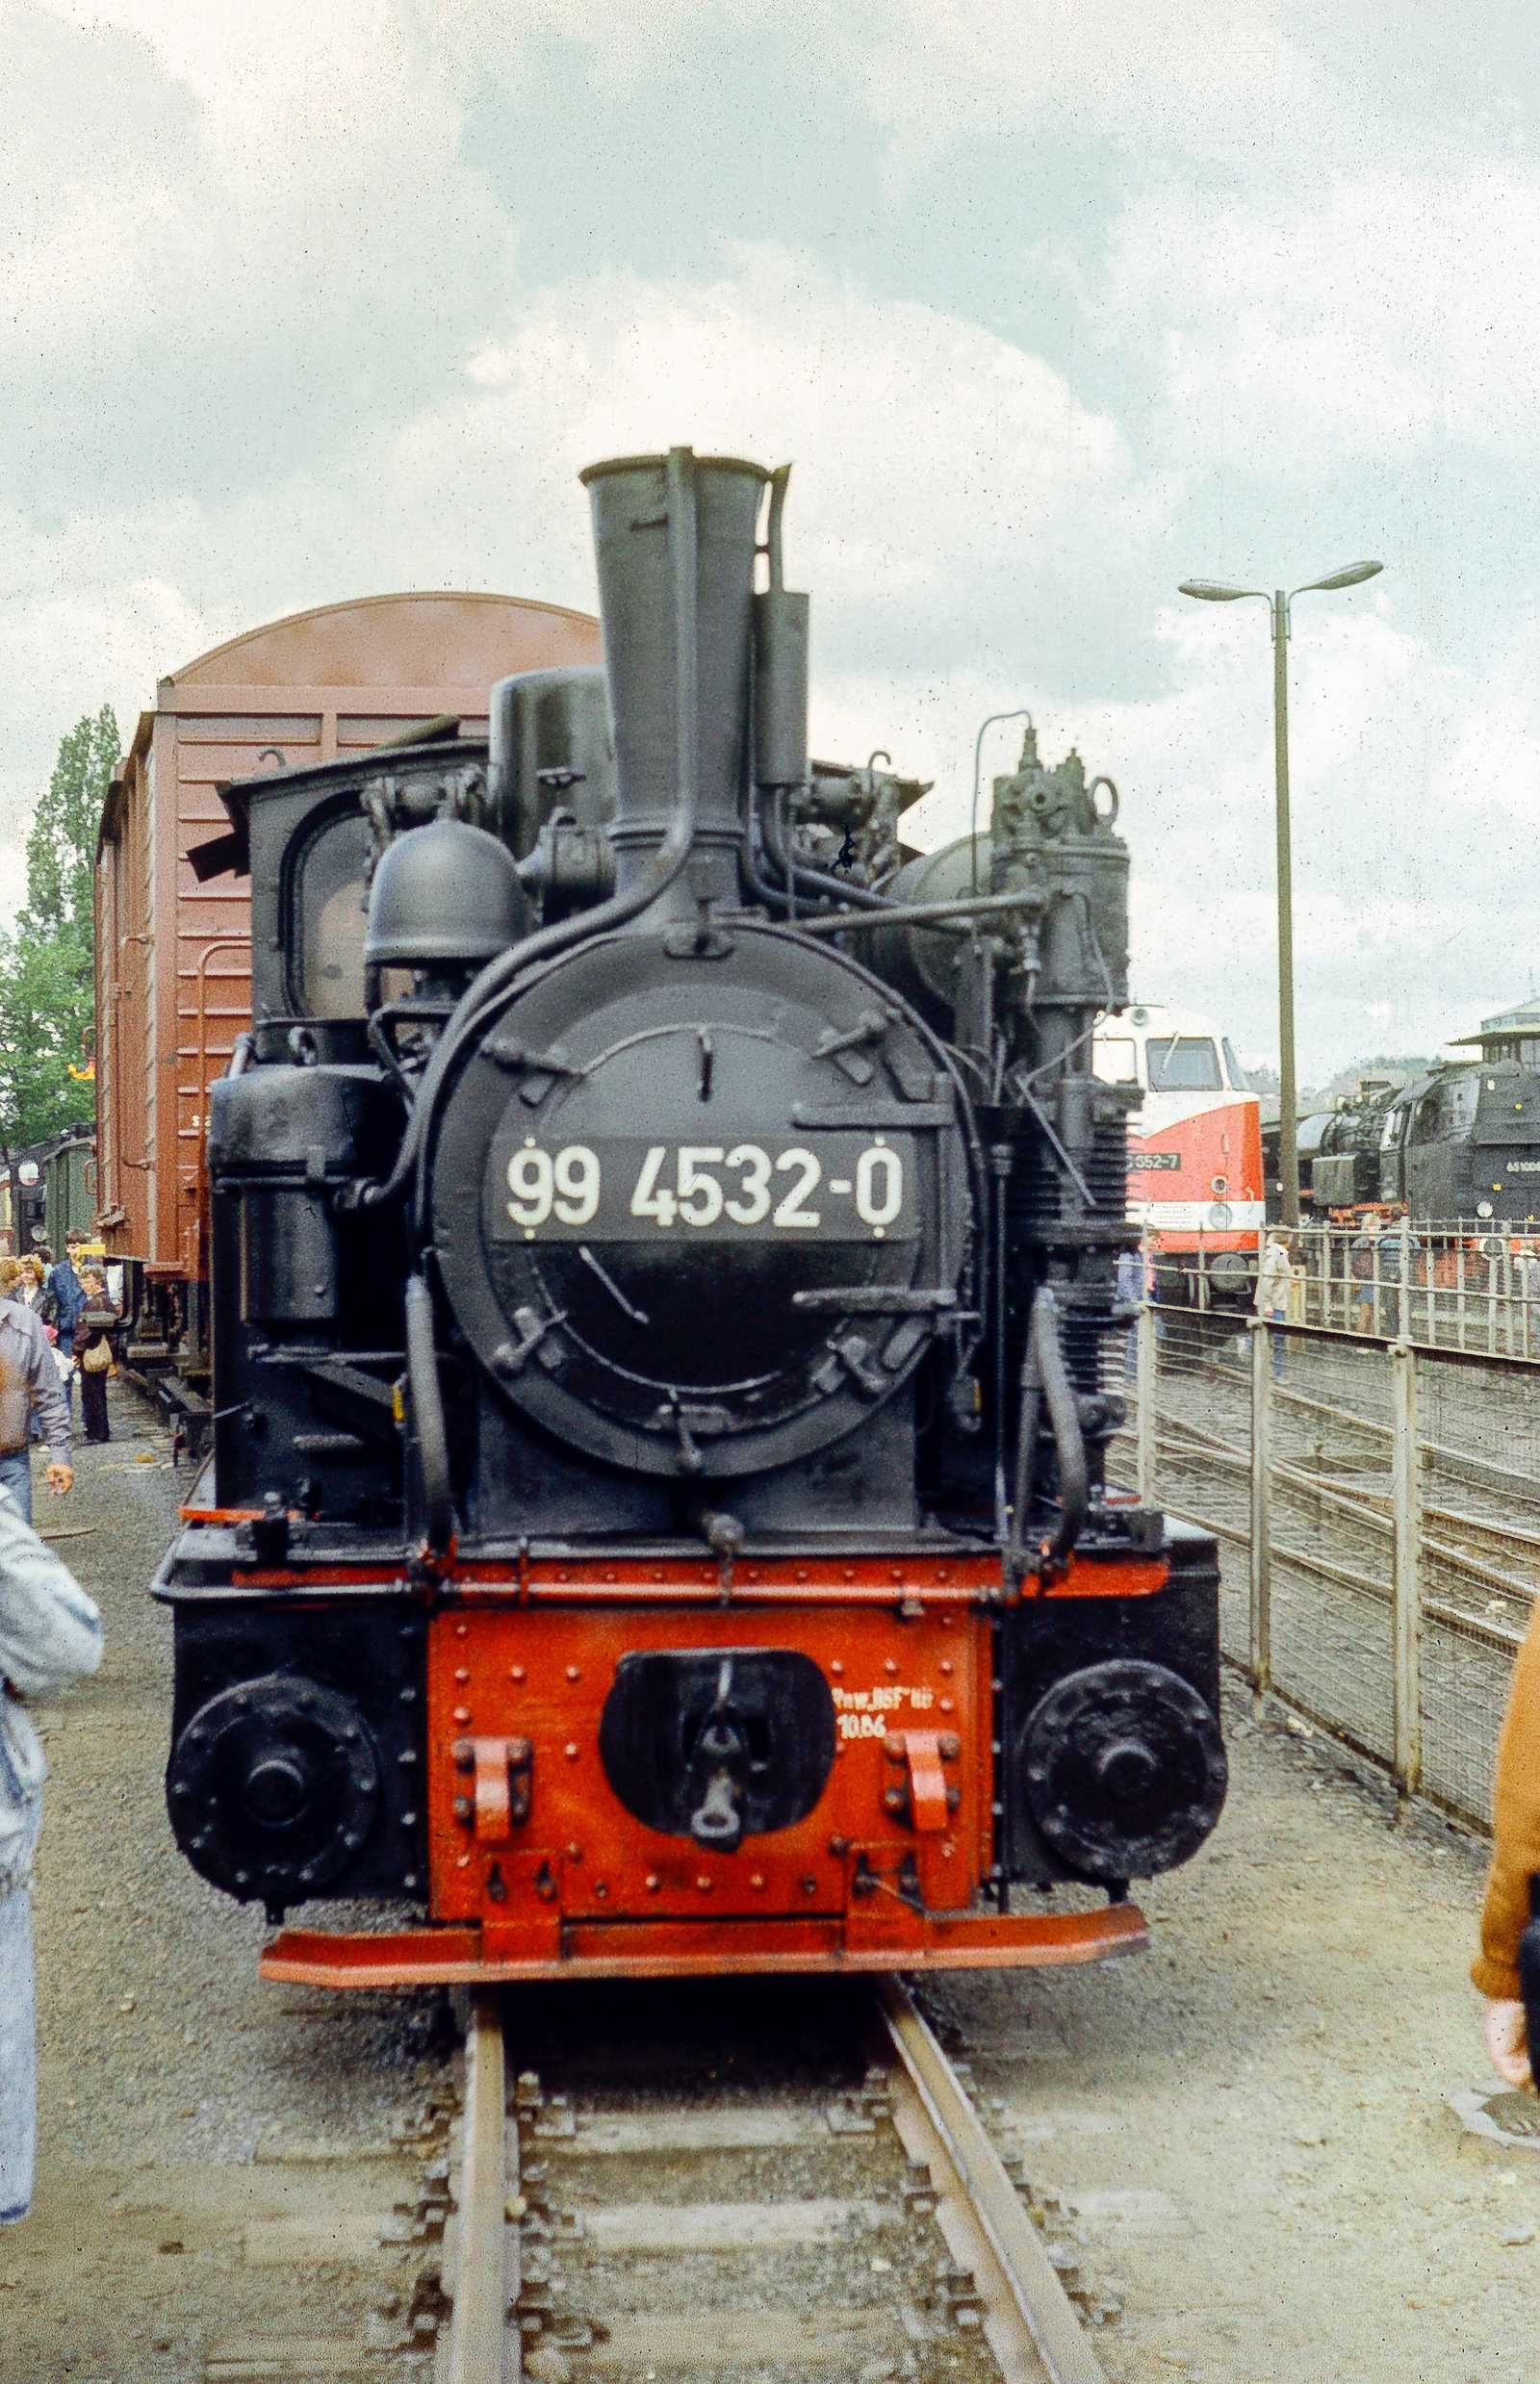 Fahrzeugraritäten, die bis zu dieser Veranstaltung nur wenige Eisenbahnfreunde zu Gesicht bekommen hatten, standen in der Ausstellung im Bahnhof Zittau, darunter der Triebwagen 137 322 und die ehemalige Trusebahnlok 99 4532-0, genannt „Hofdame“.